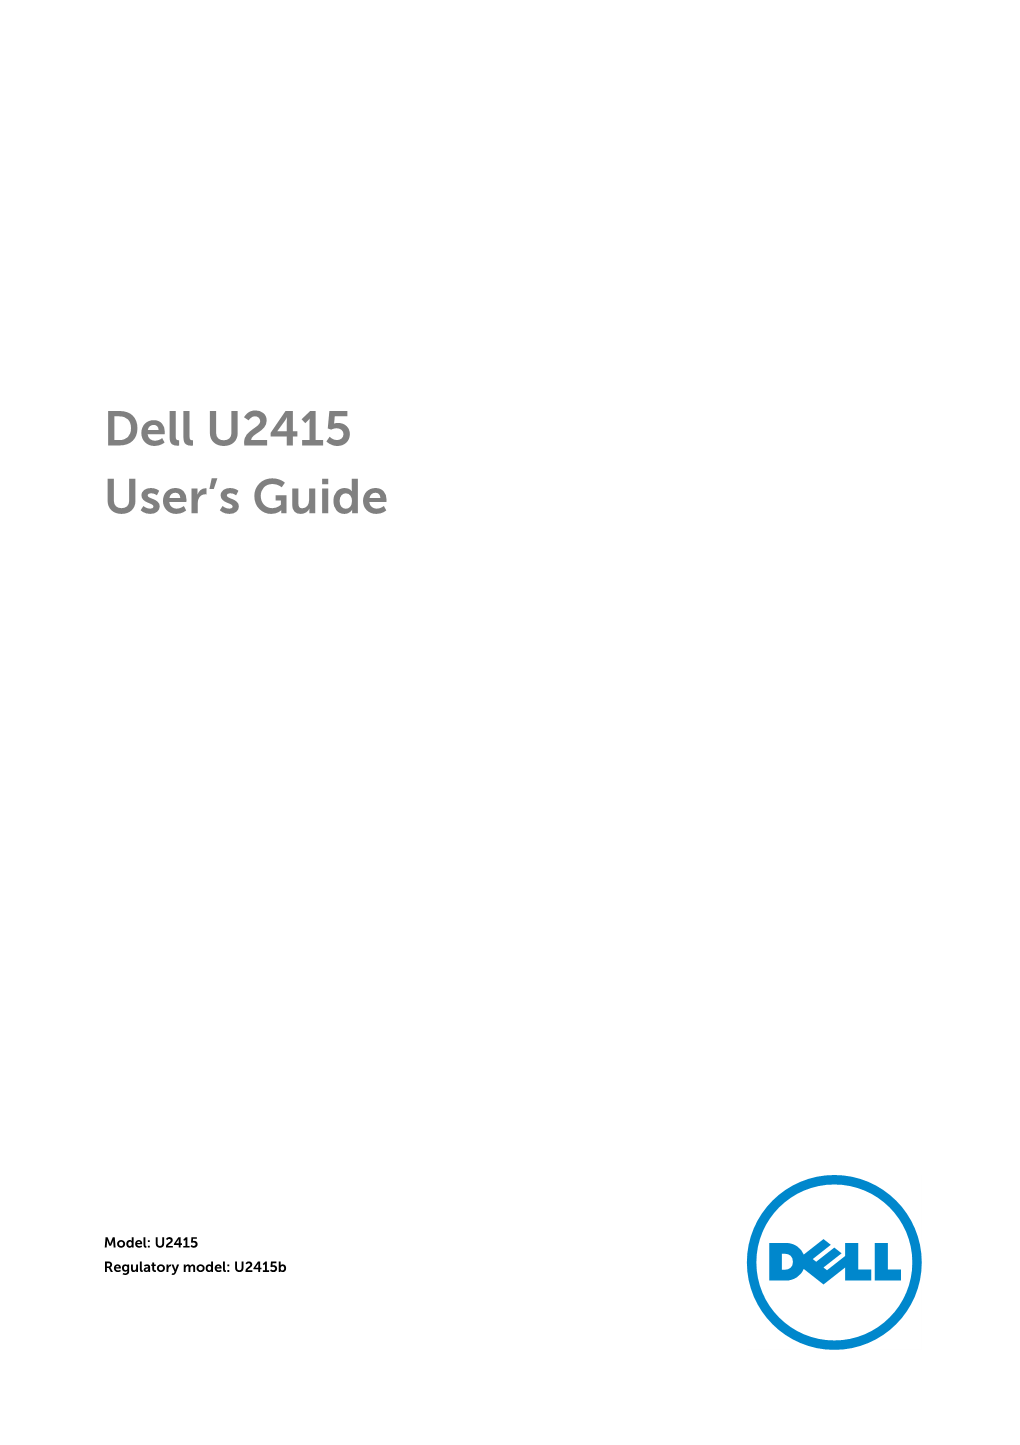 Dell U2415 Monitor User's Guide